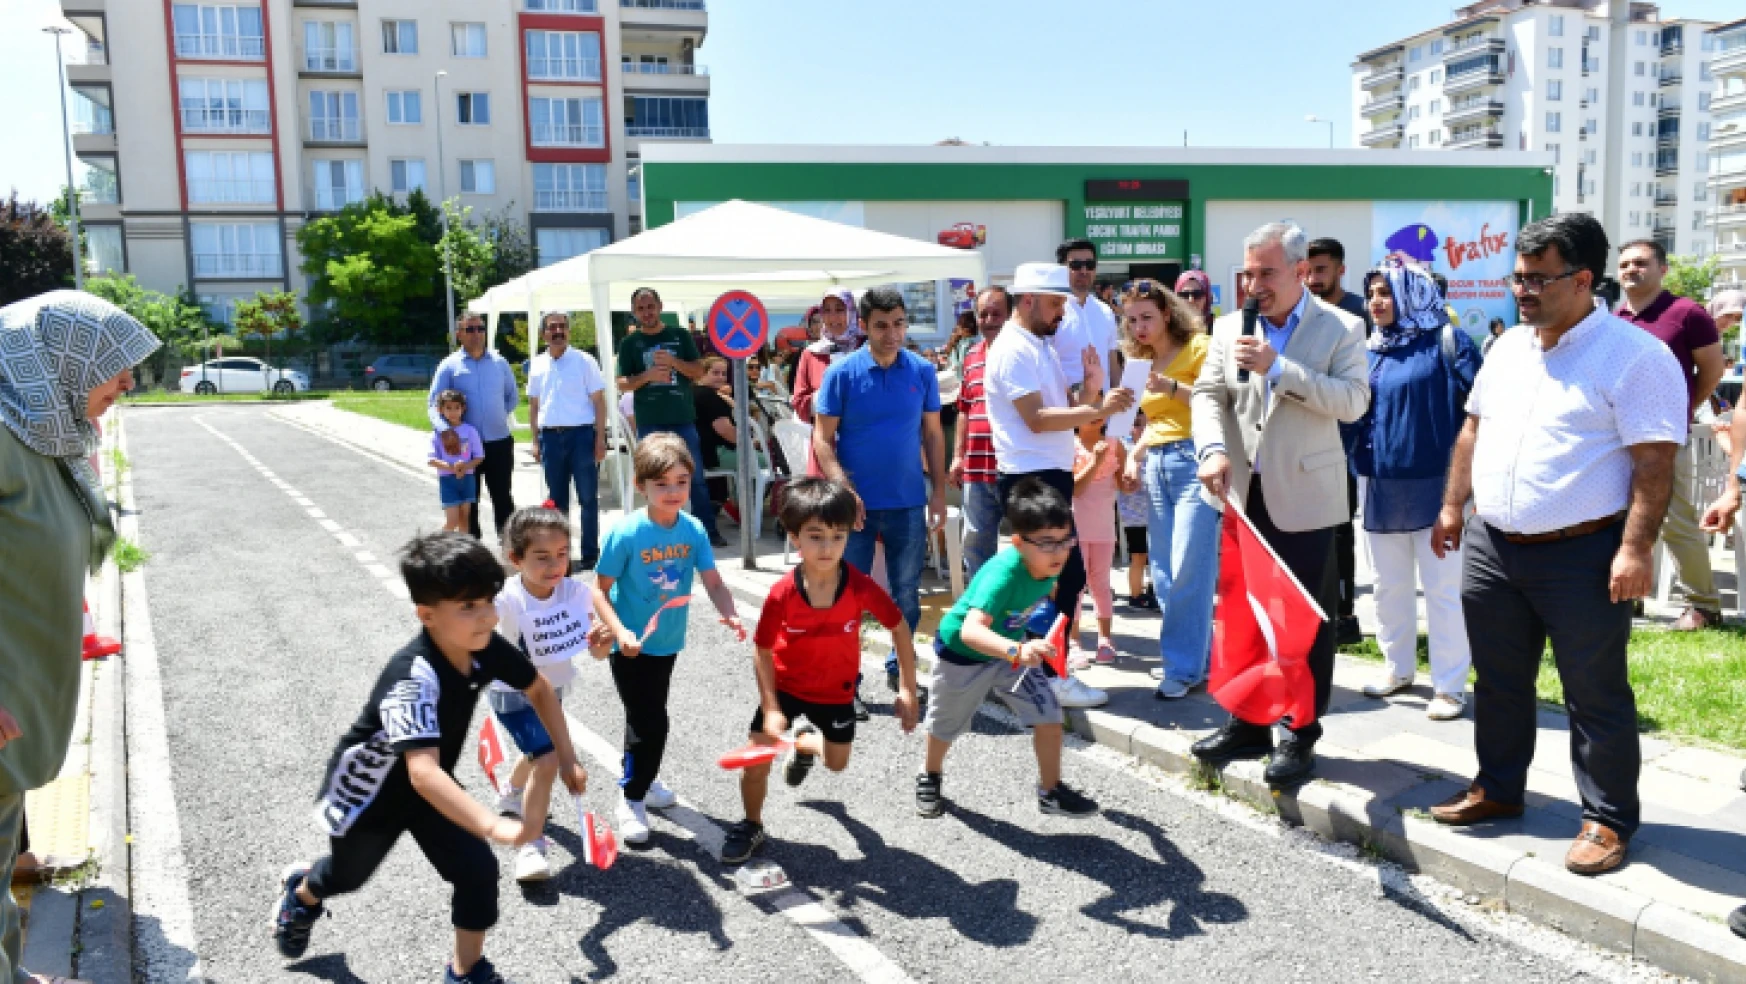 Yeşilyurt Belediyesi Çocuk Trafik Eğitim Parkı 'Minikler Yarışıyor' Programına Ev Sahipliği Yaptı